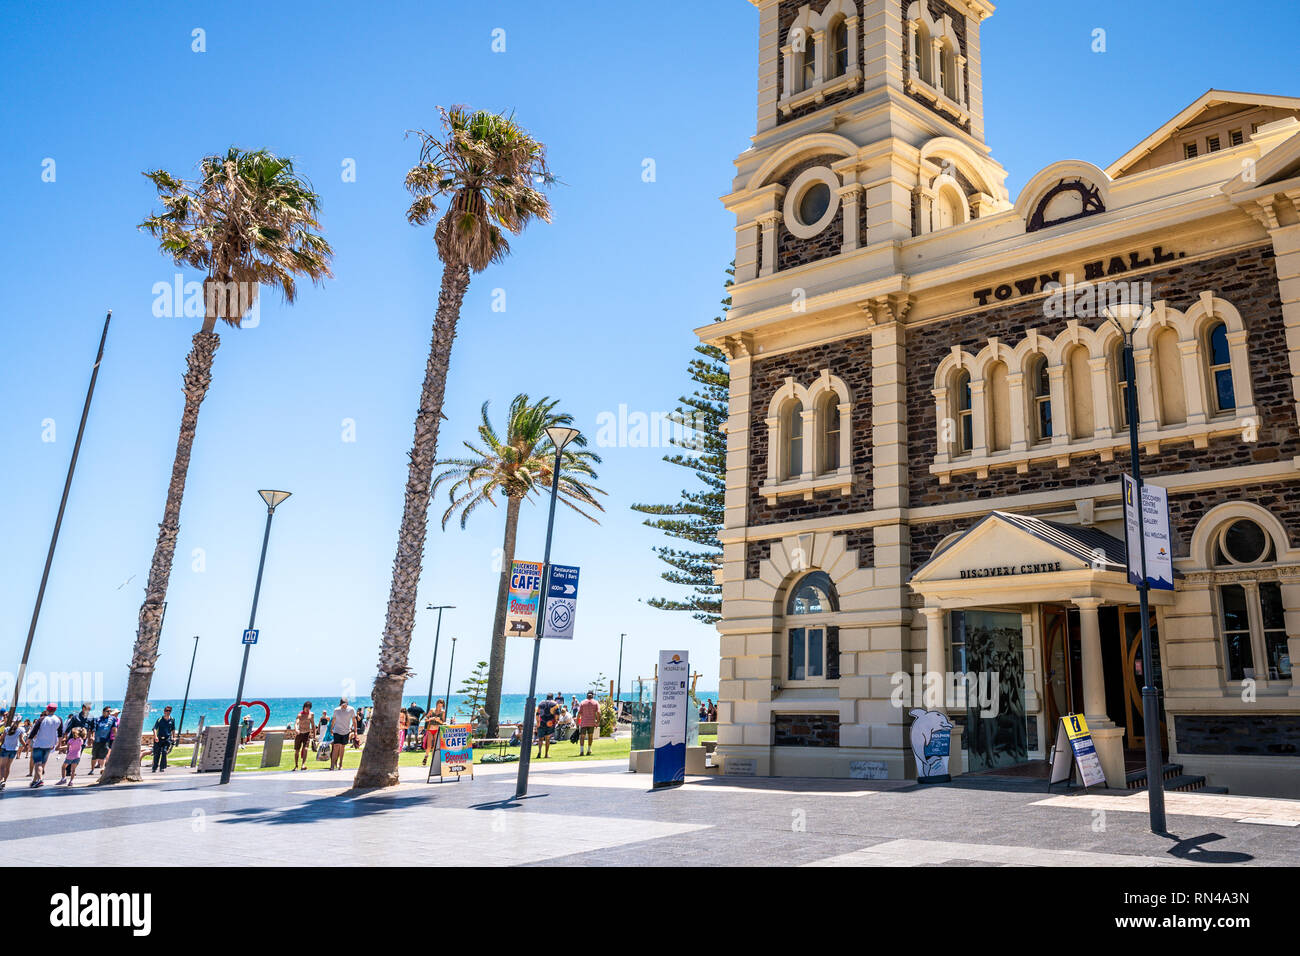 31st December 2018 , Glenelg Adelaide South Australia : Glenelg town hall building exterior and beach view in Glenelg SA Australia Stock Photo